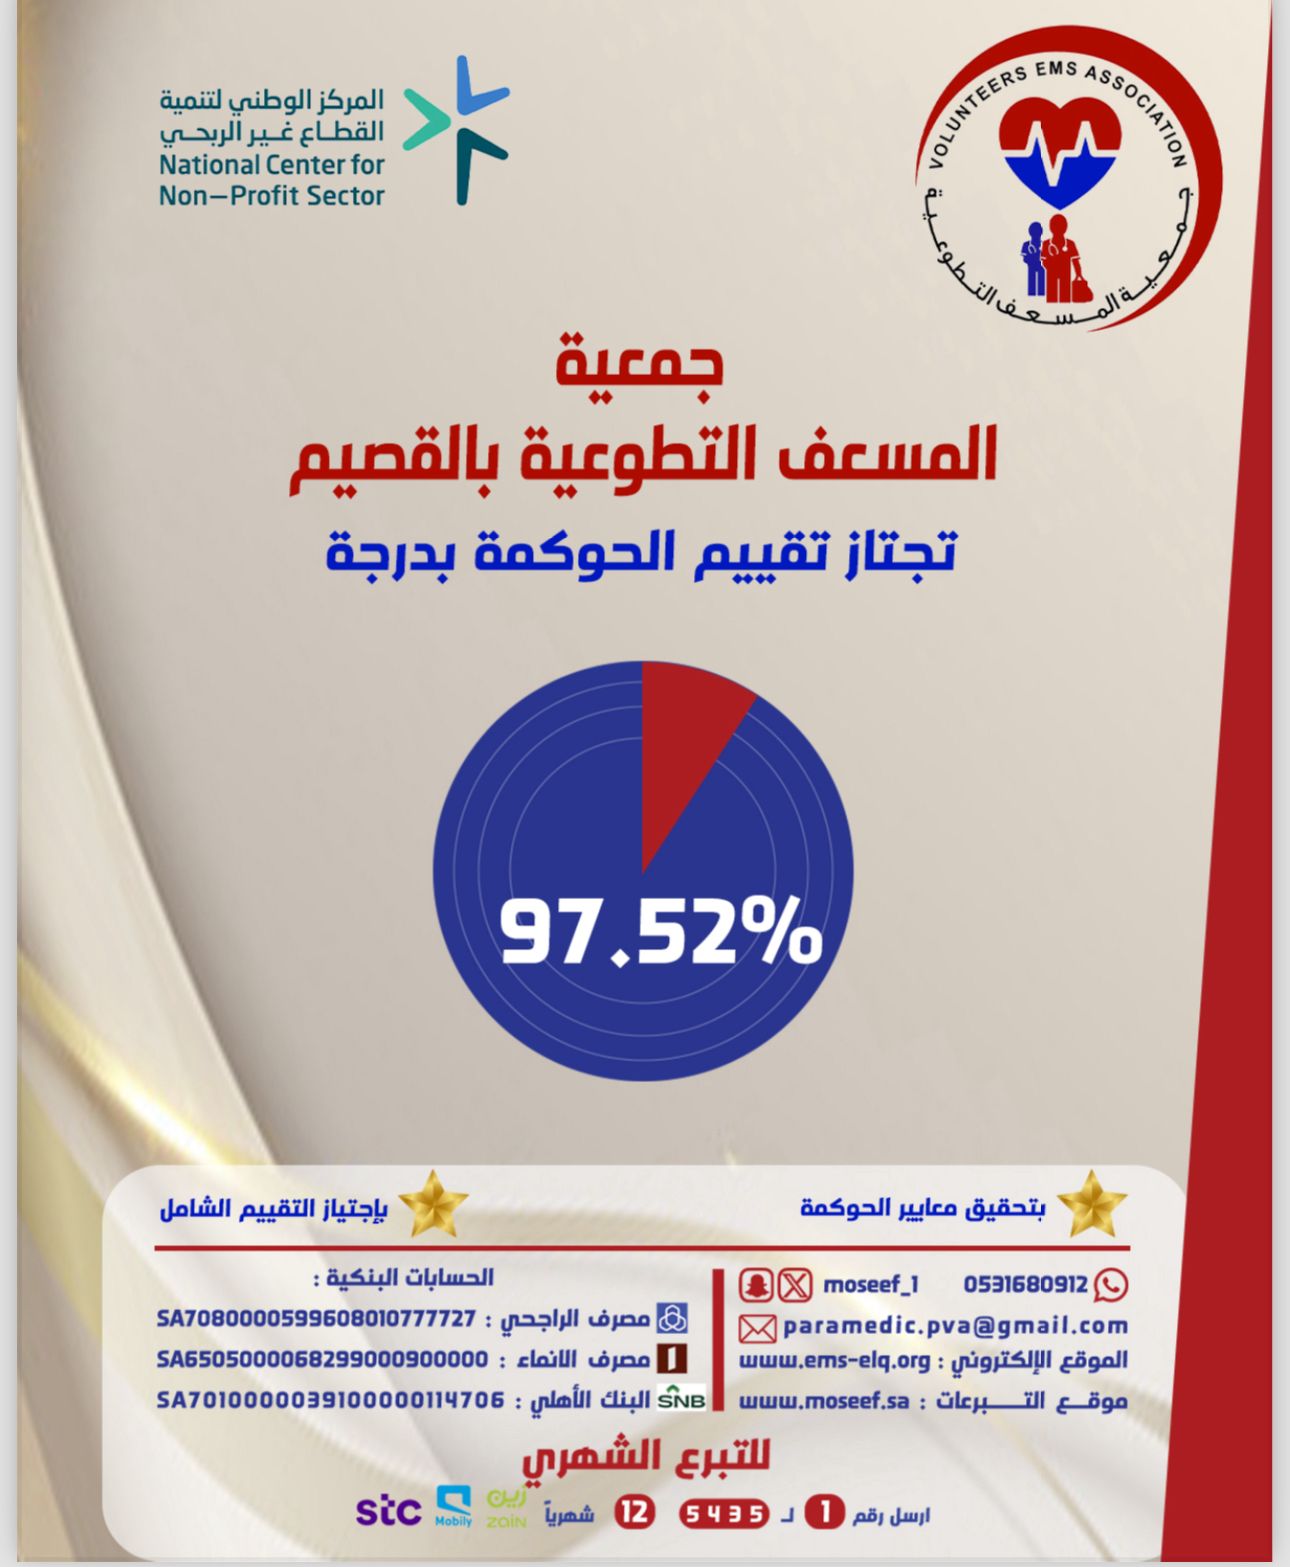 جمعية المسعف التطوعية بالقصيم تجتاز تقييم الحوكمة بدرجة 97.52%